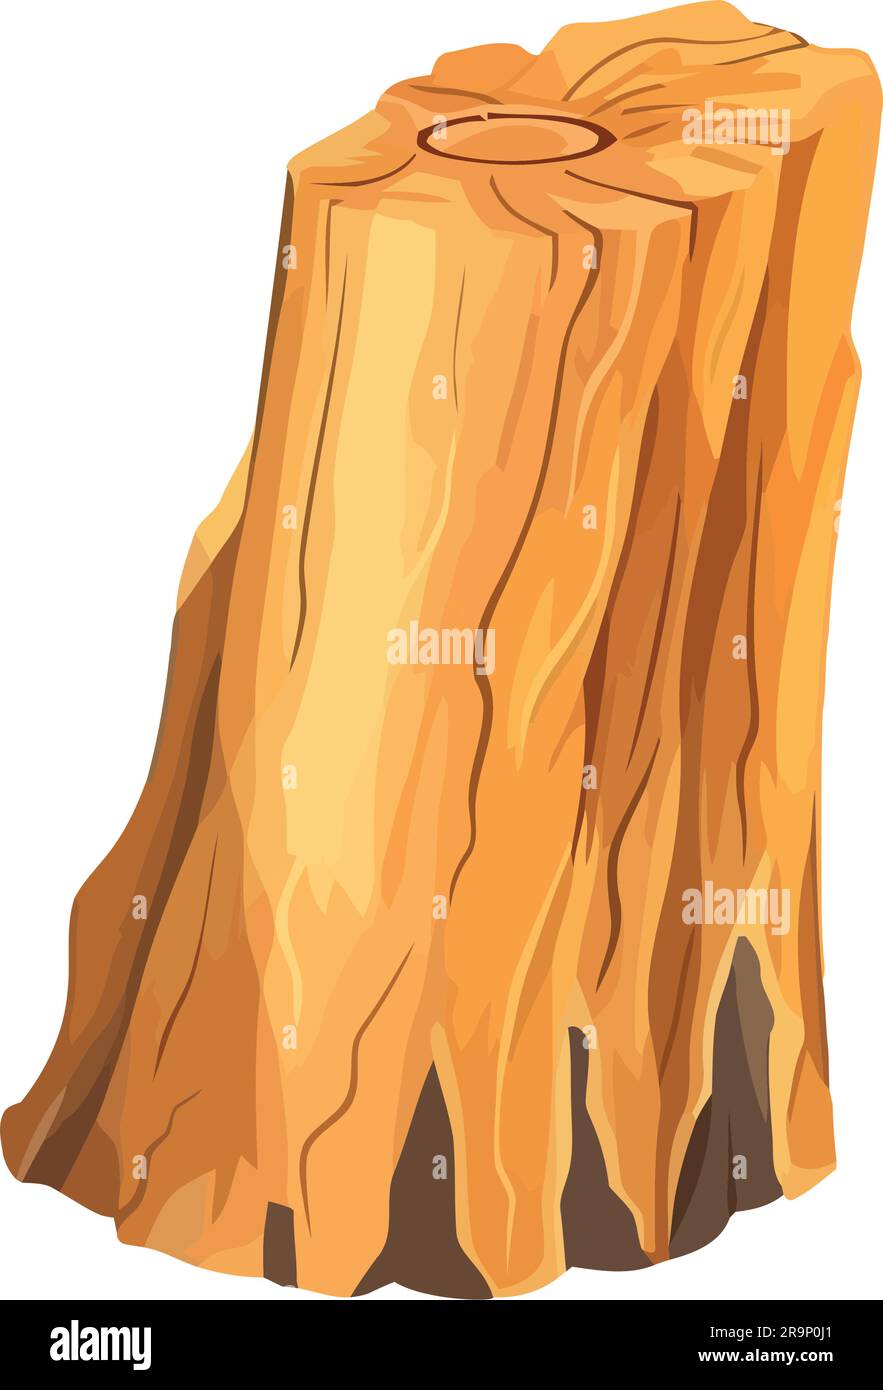 Pile de bois d'arbres tombés sur blanc Illustration de Vecteur